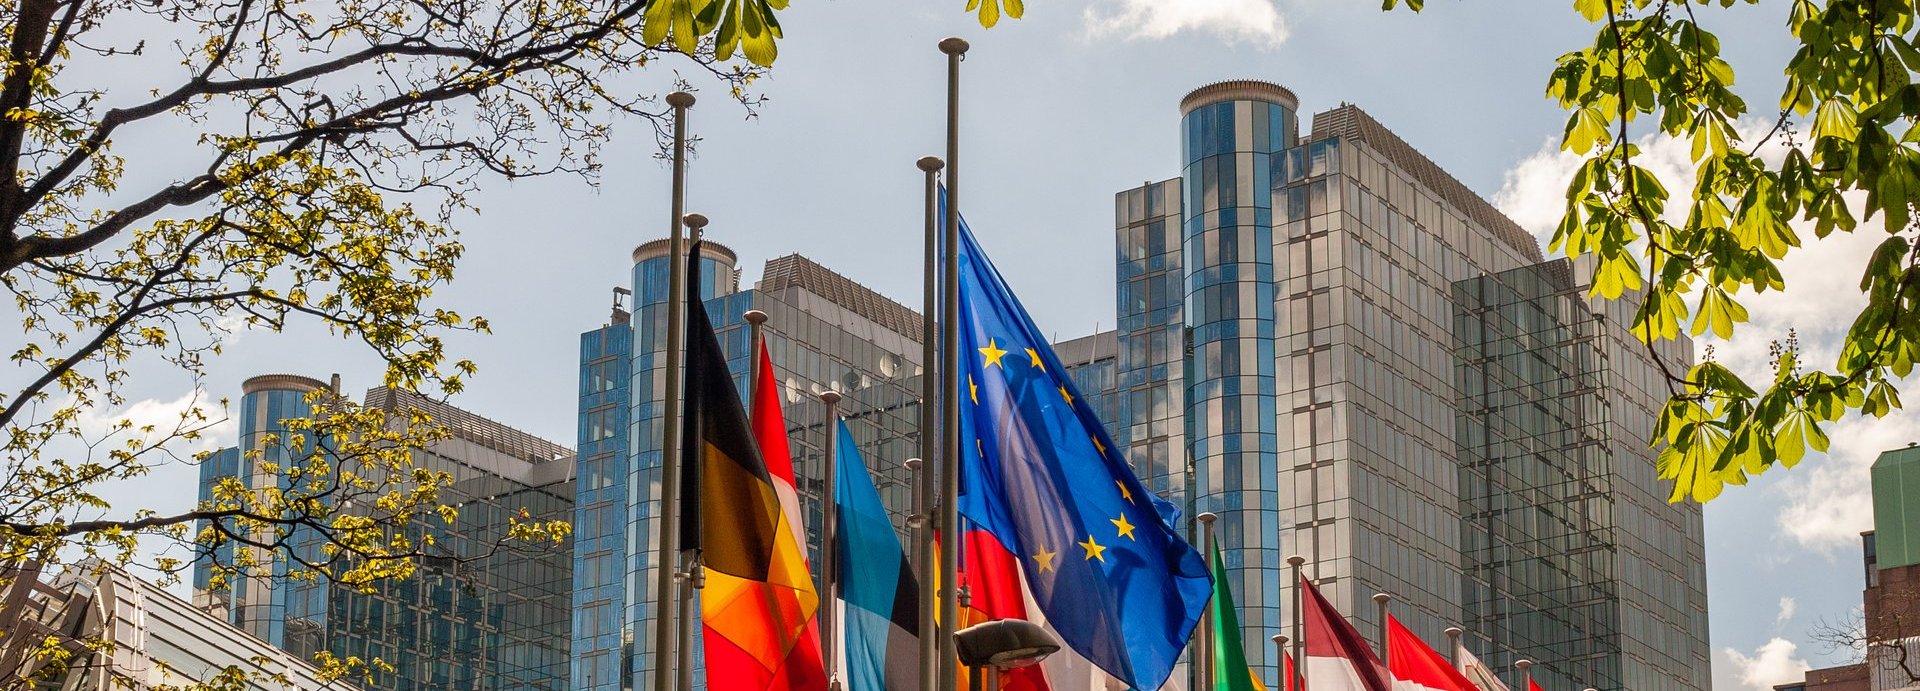 Paul Henri Spaak Gebäude im Hintergrund mit europäischen Flaggen und Ästen